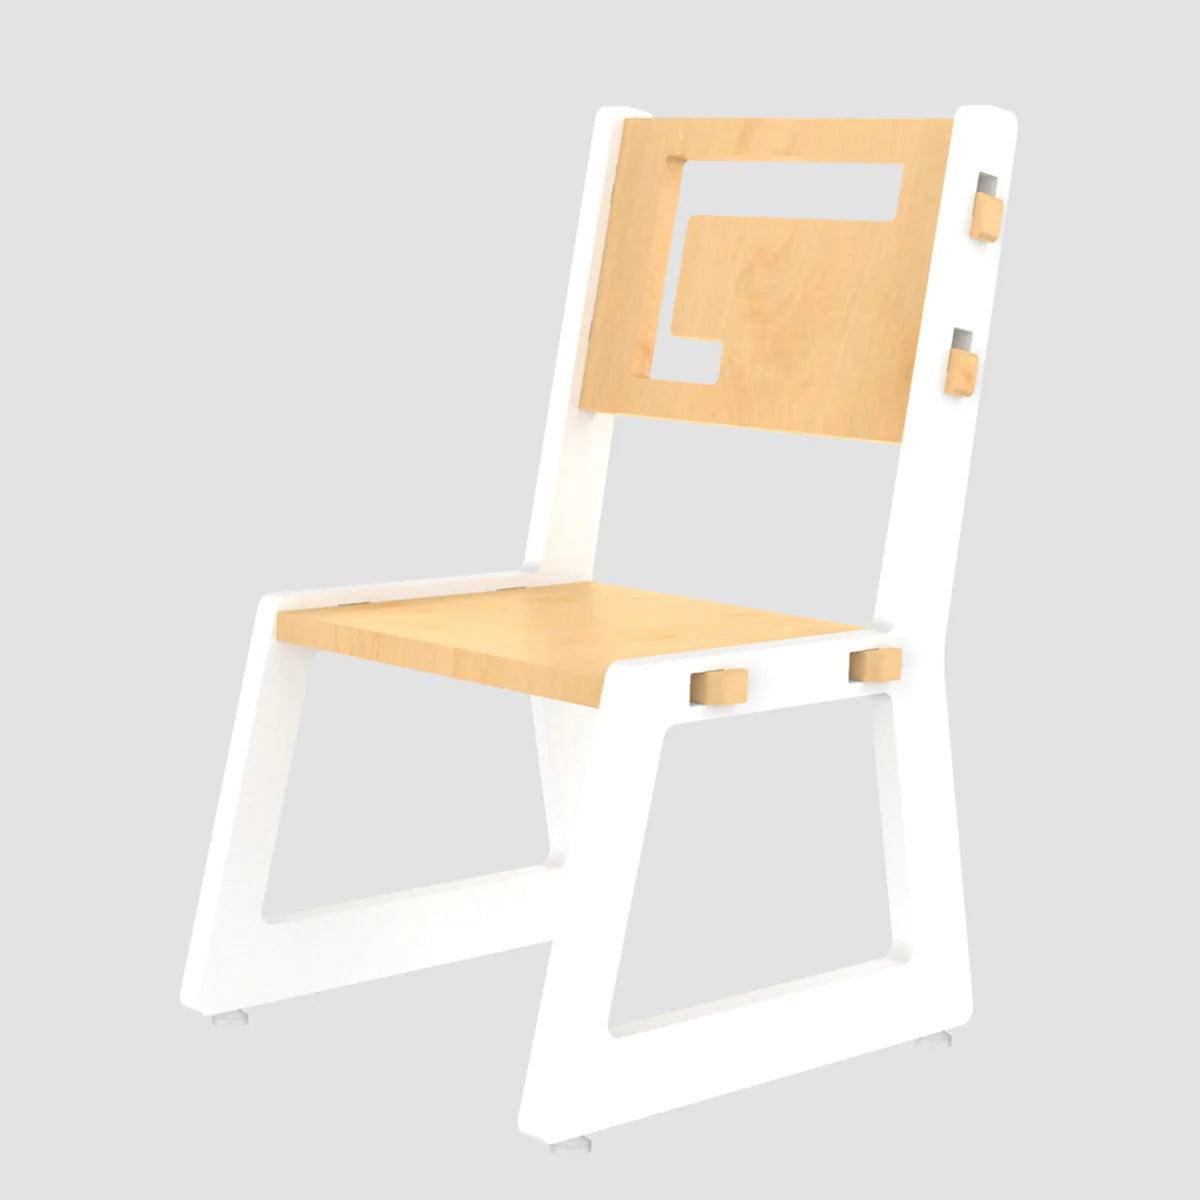 Buy Blue Apple Wooden Chair - White - SkilloToys.com